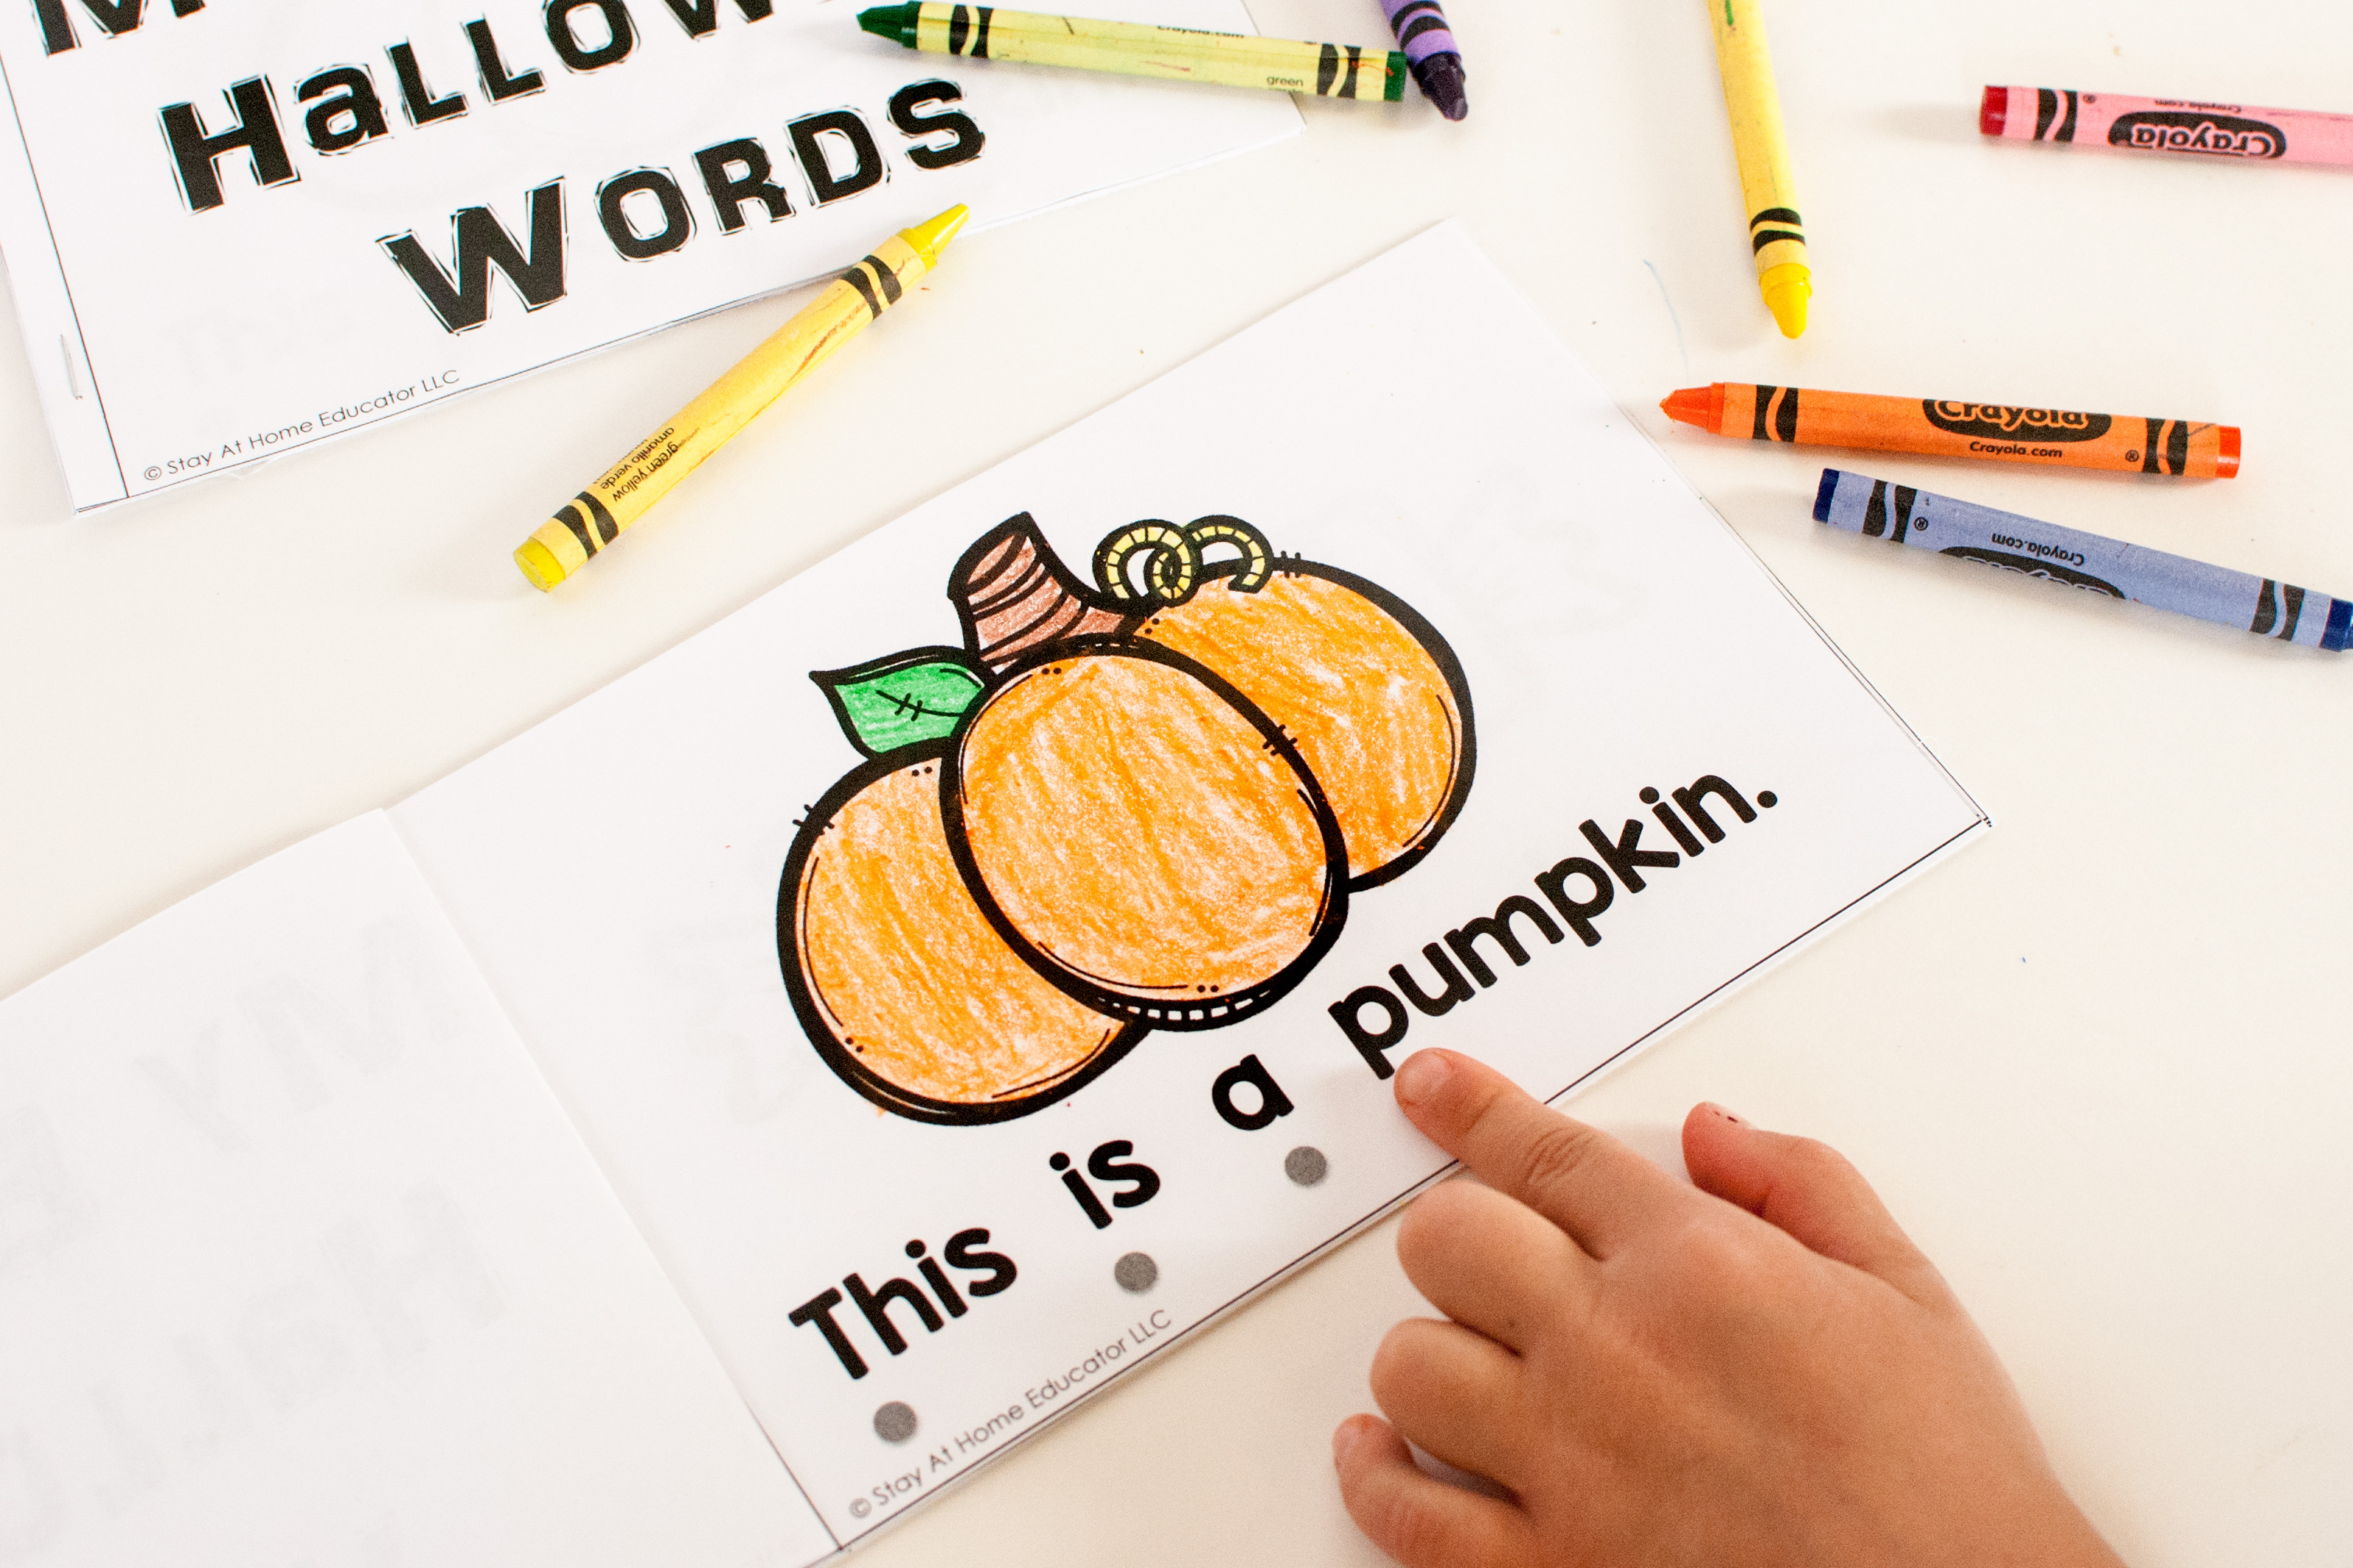 Halloween activities for preschoolers - emergent reader